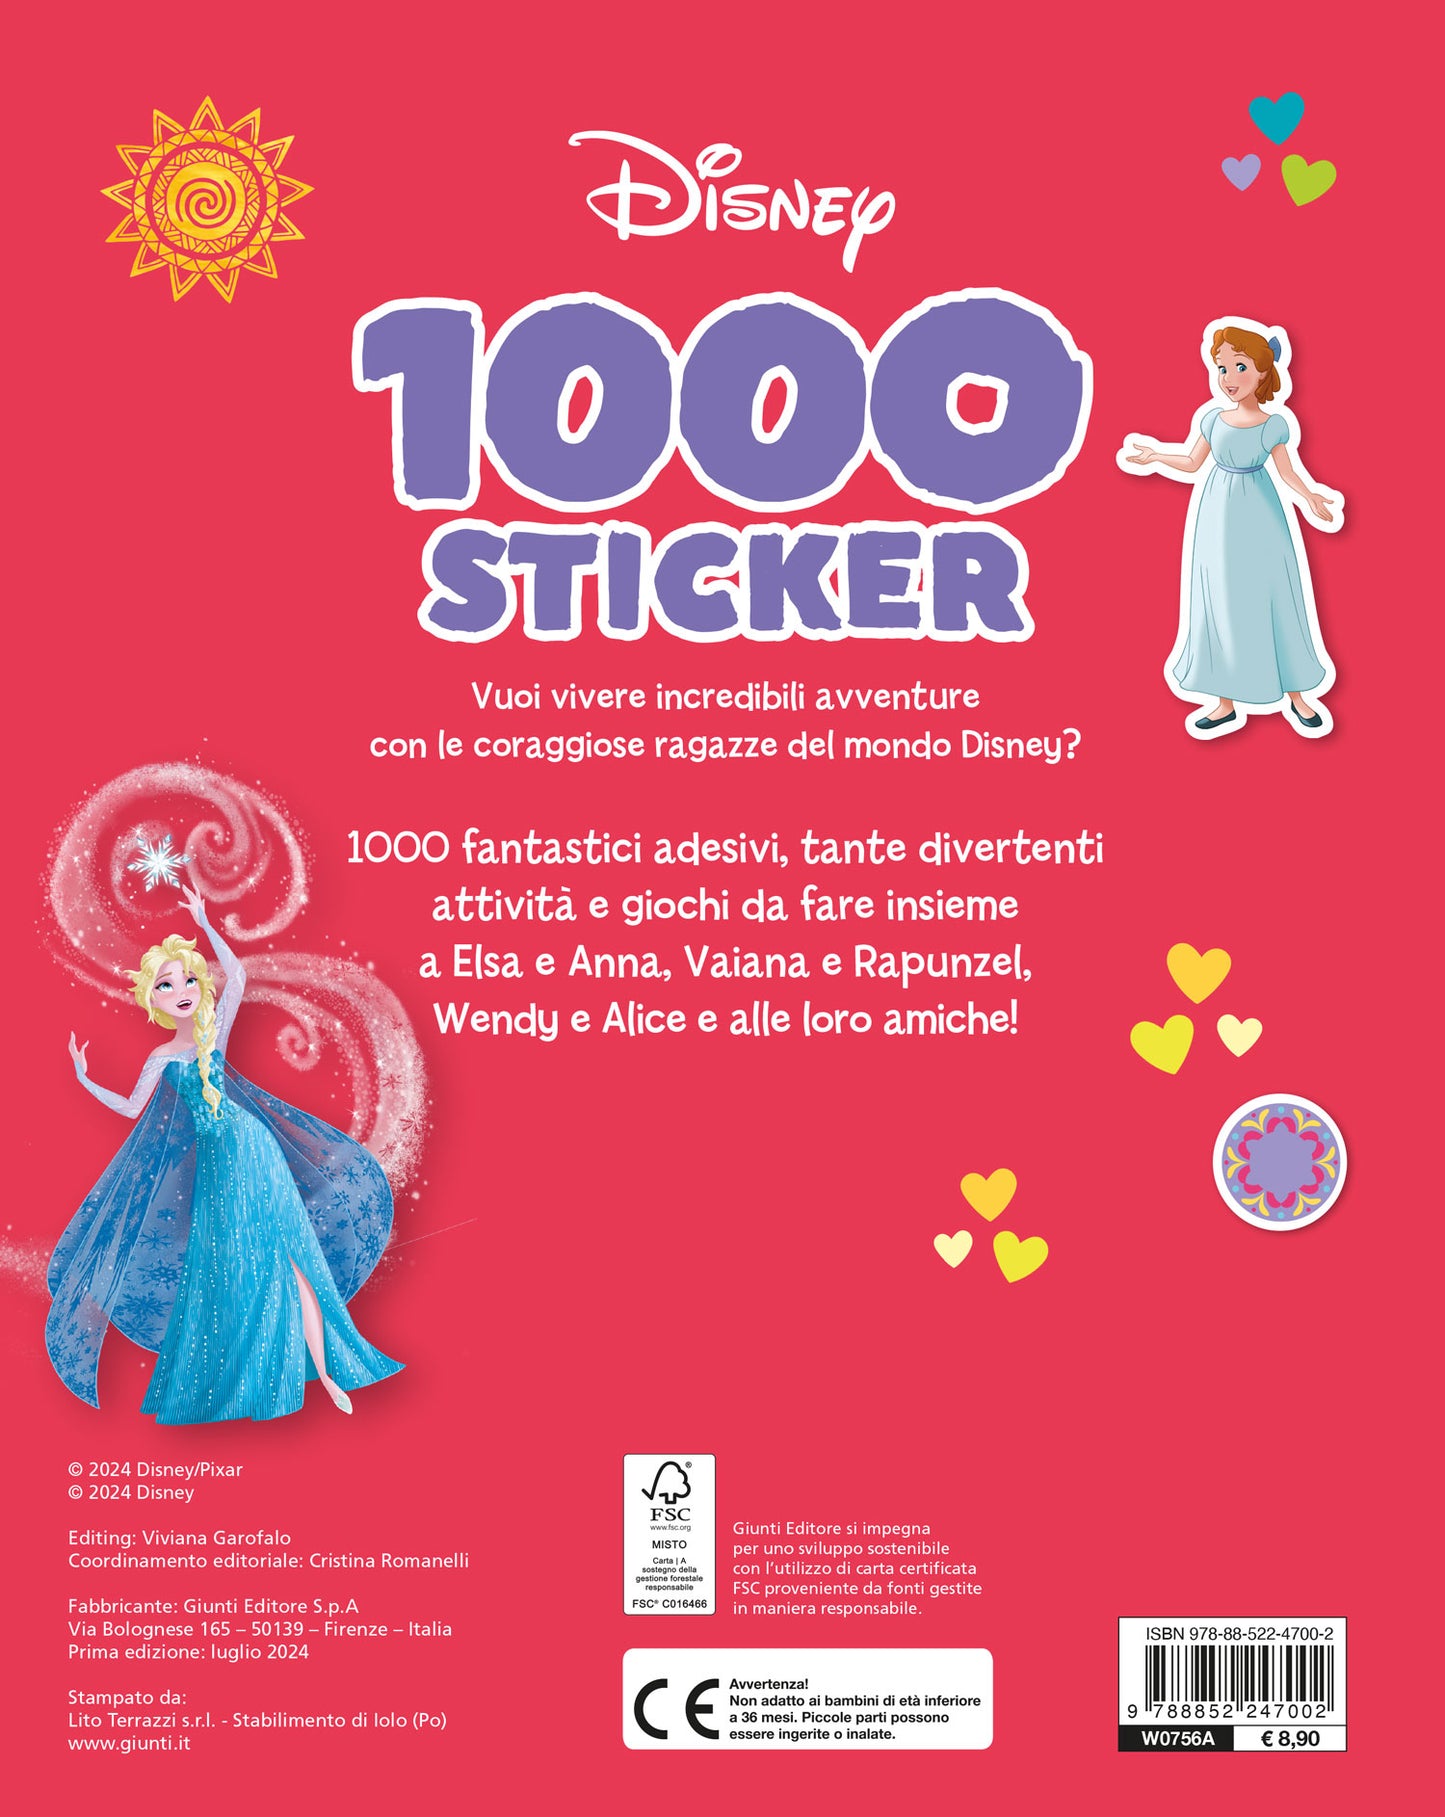 Ragazze coraggiose 1000 Sticker Disney::Tanti giochi e attività